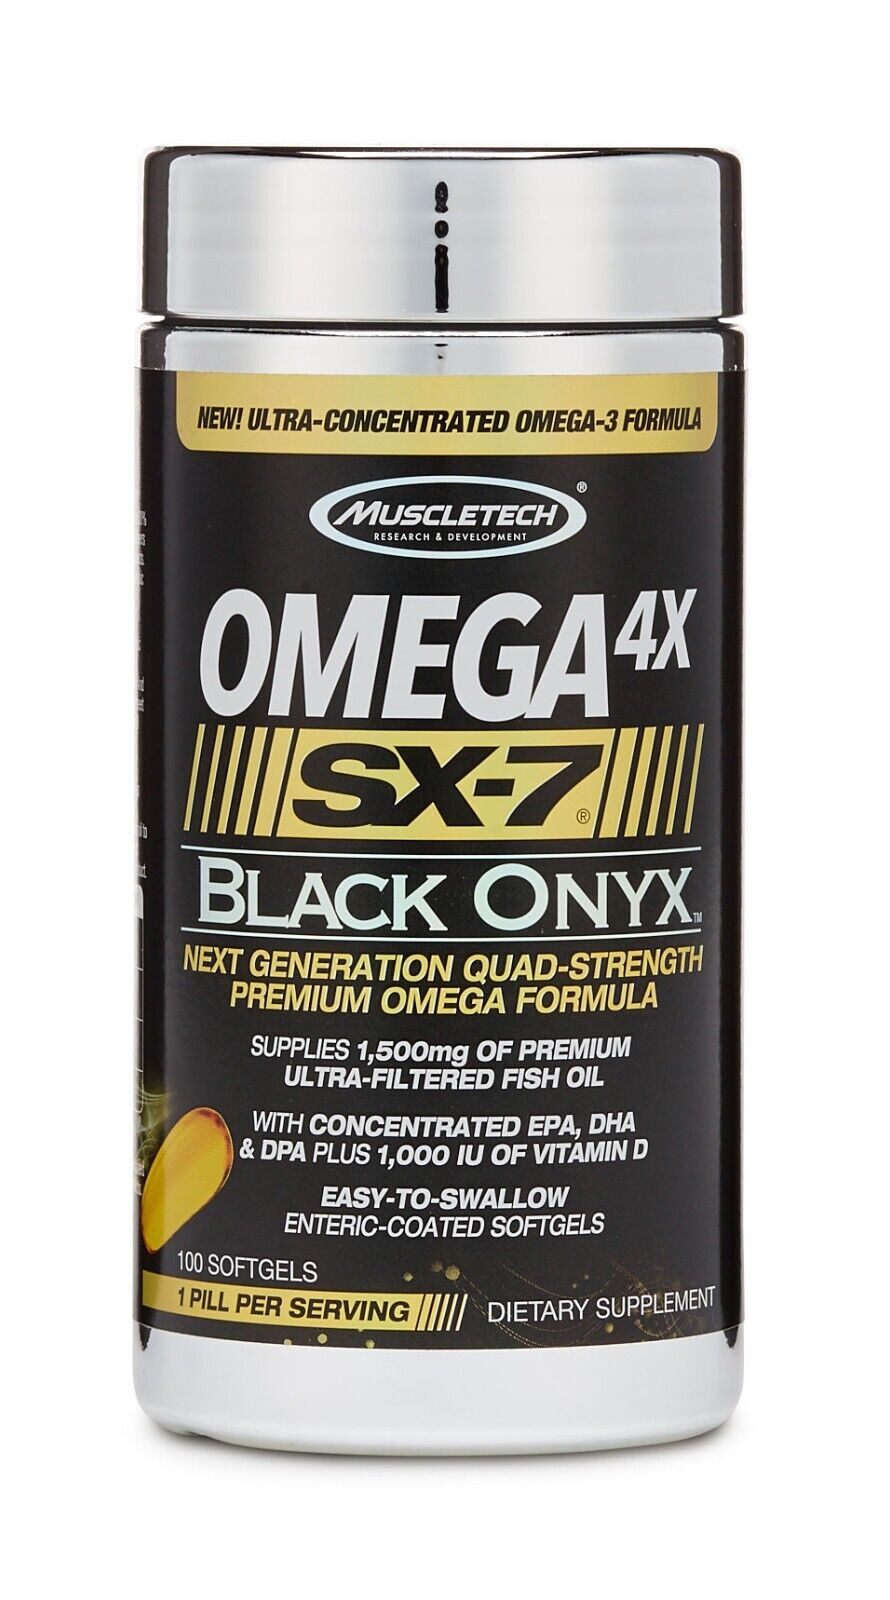 Omega 4X SX 7 Black Onyx 100ct - Potent Omega-3 Formula - 1,500mg Fish Oil